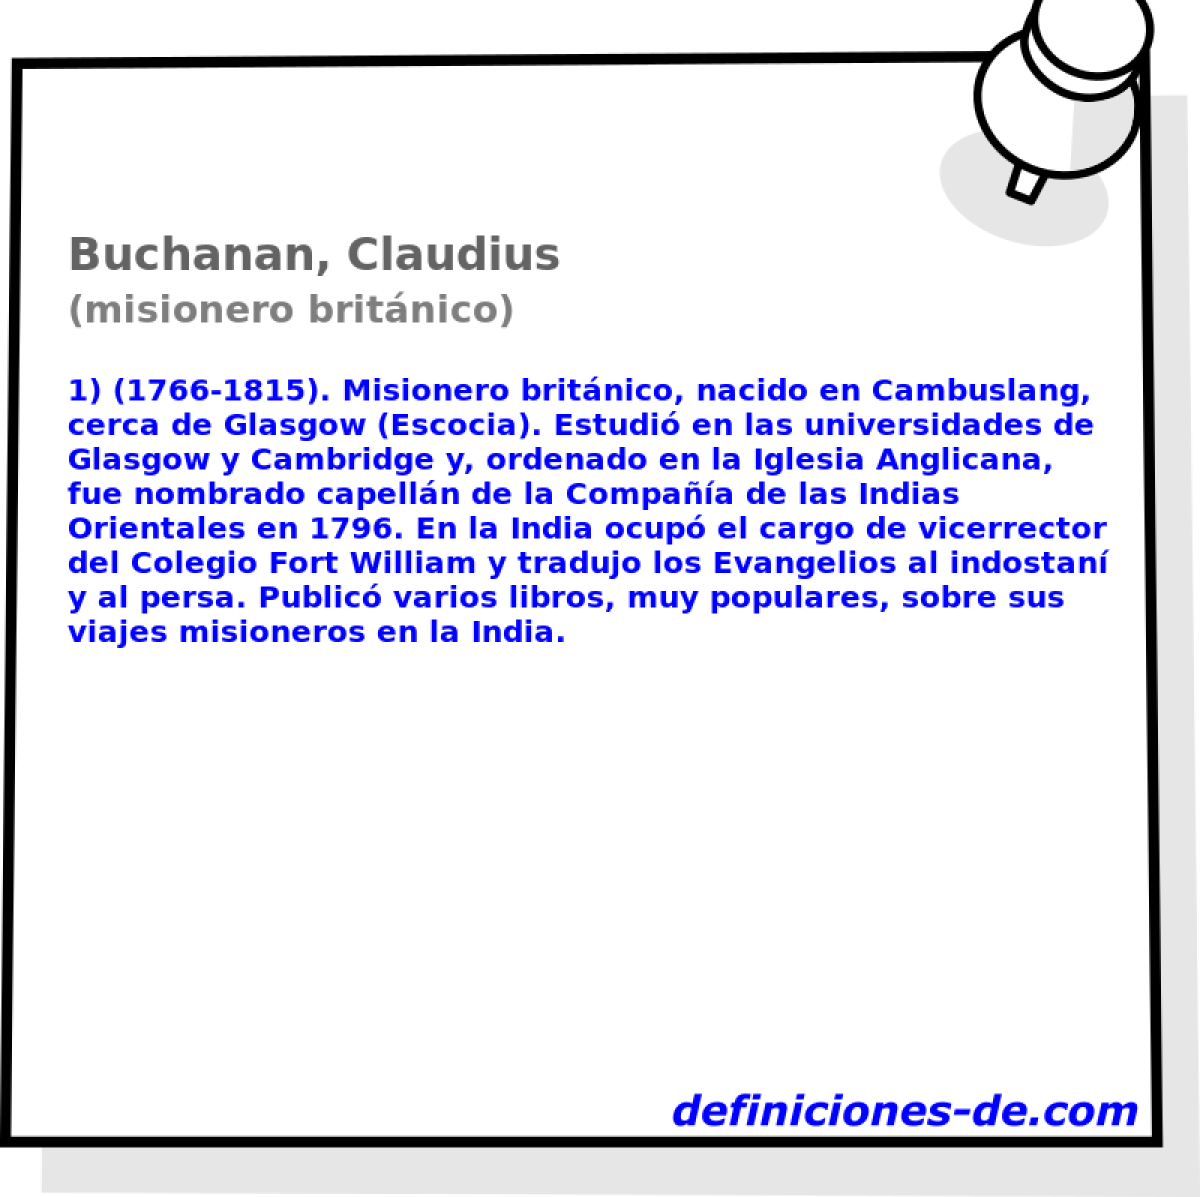 Buchanan, Claudius (misionero britnico)